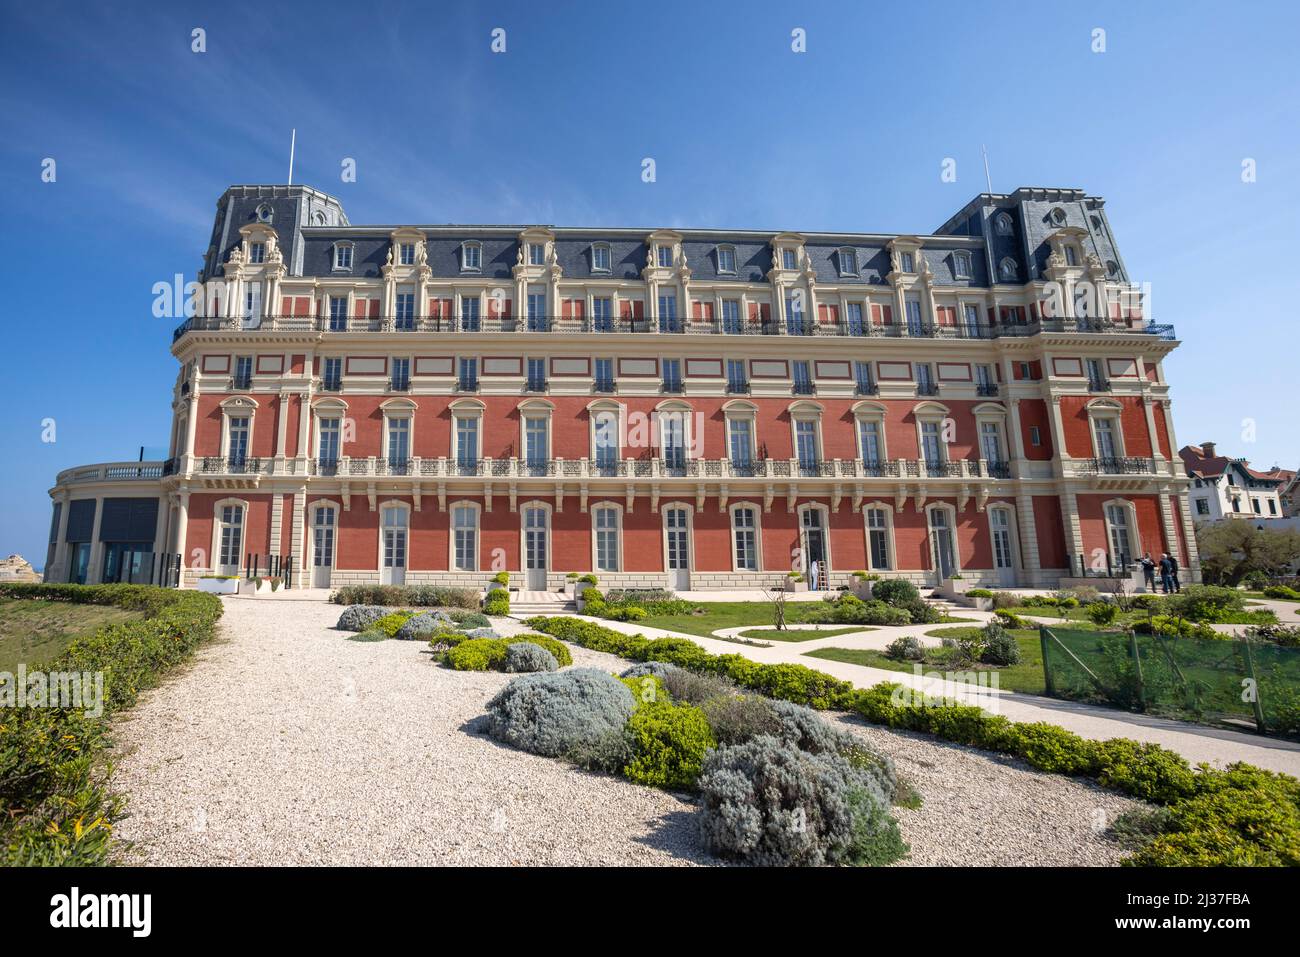 Das Hôtel du Palais (ursprünglich die Villa Eugénie) von Biarritz (atlantische Pyrenäen - Frankreich). Stockfoto